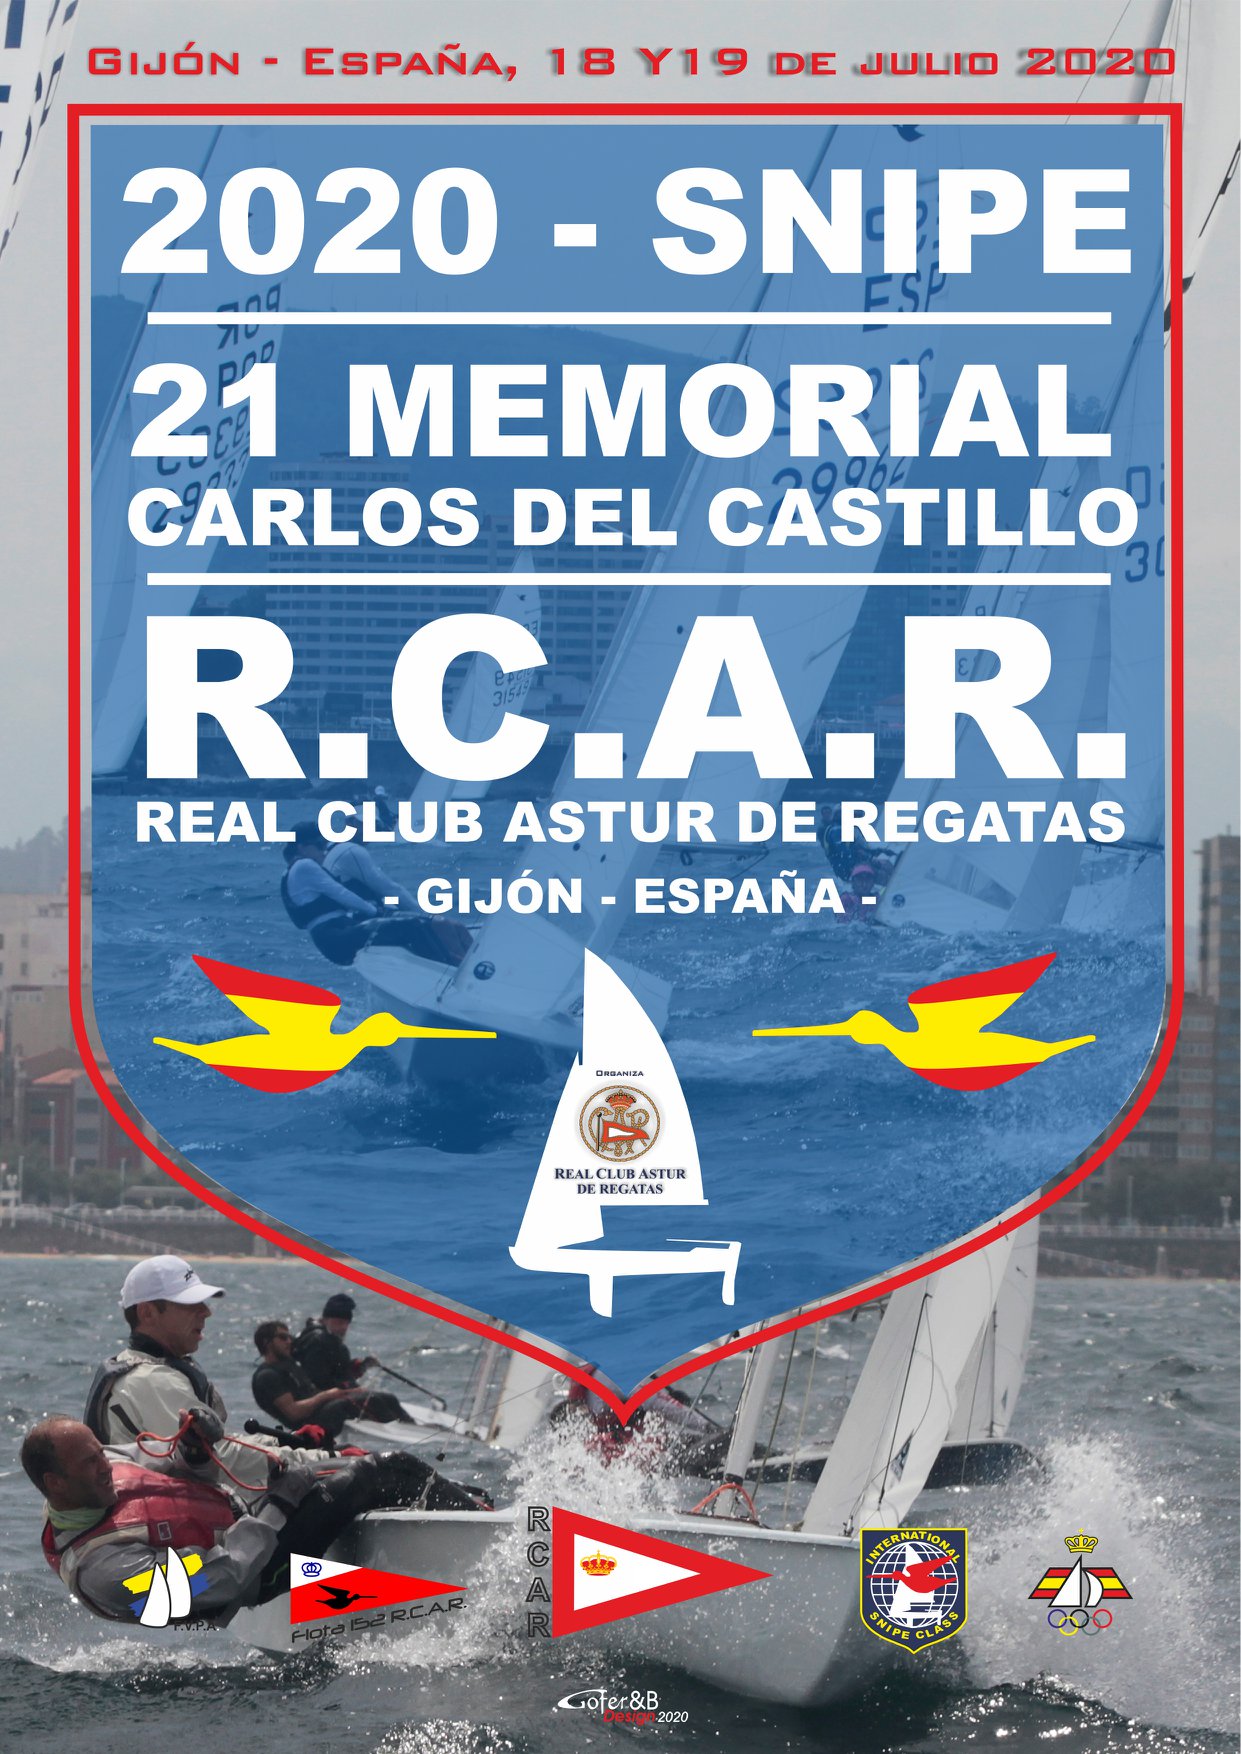 Memorial Carlos del Castillo Image